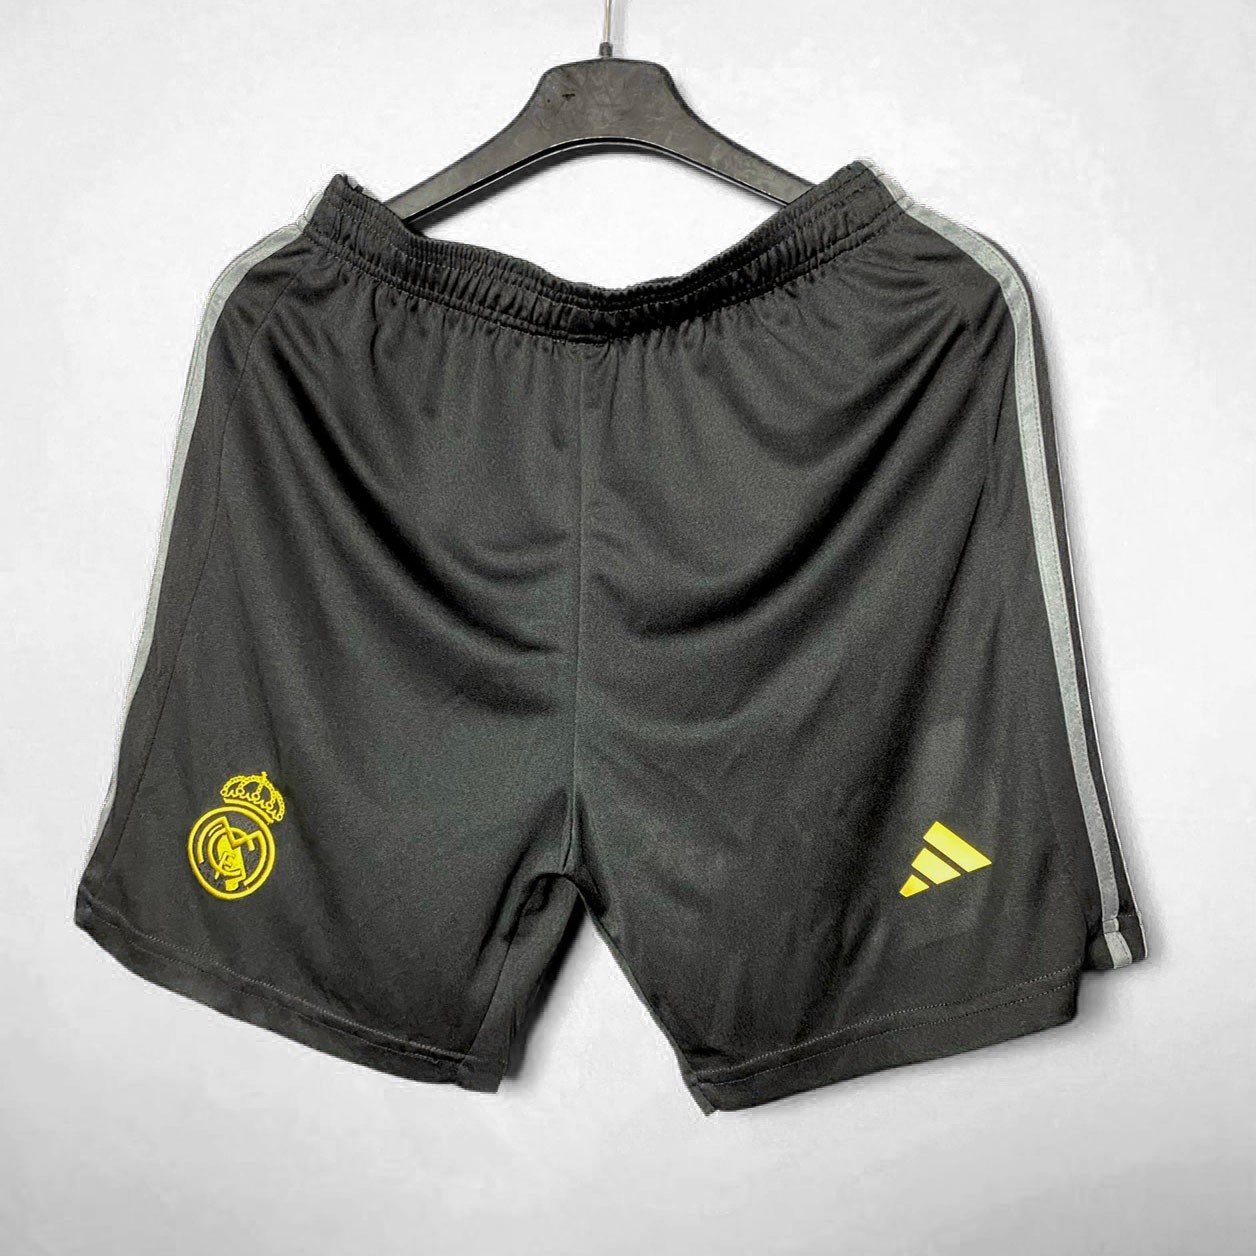 Bộ quần áo Real Madrid 23 24 Youth Third Jersey màu đen chữ vàng cổ tam giác full hàng